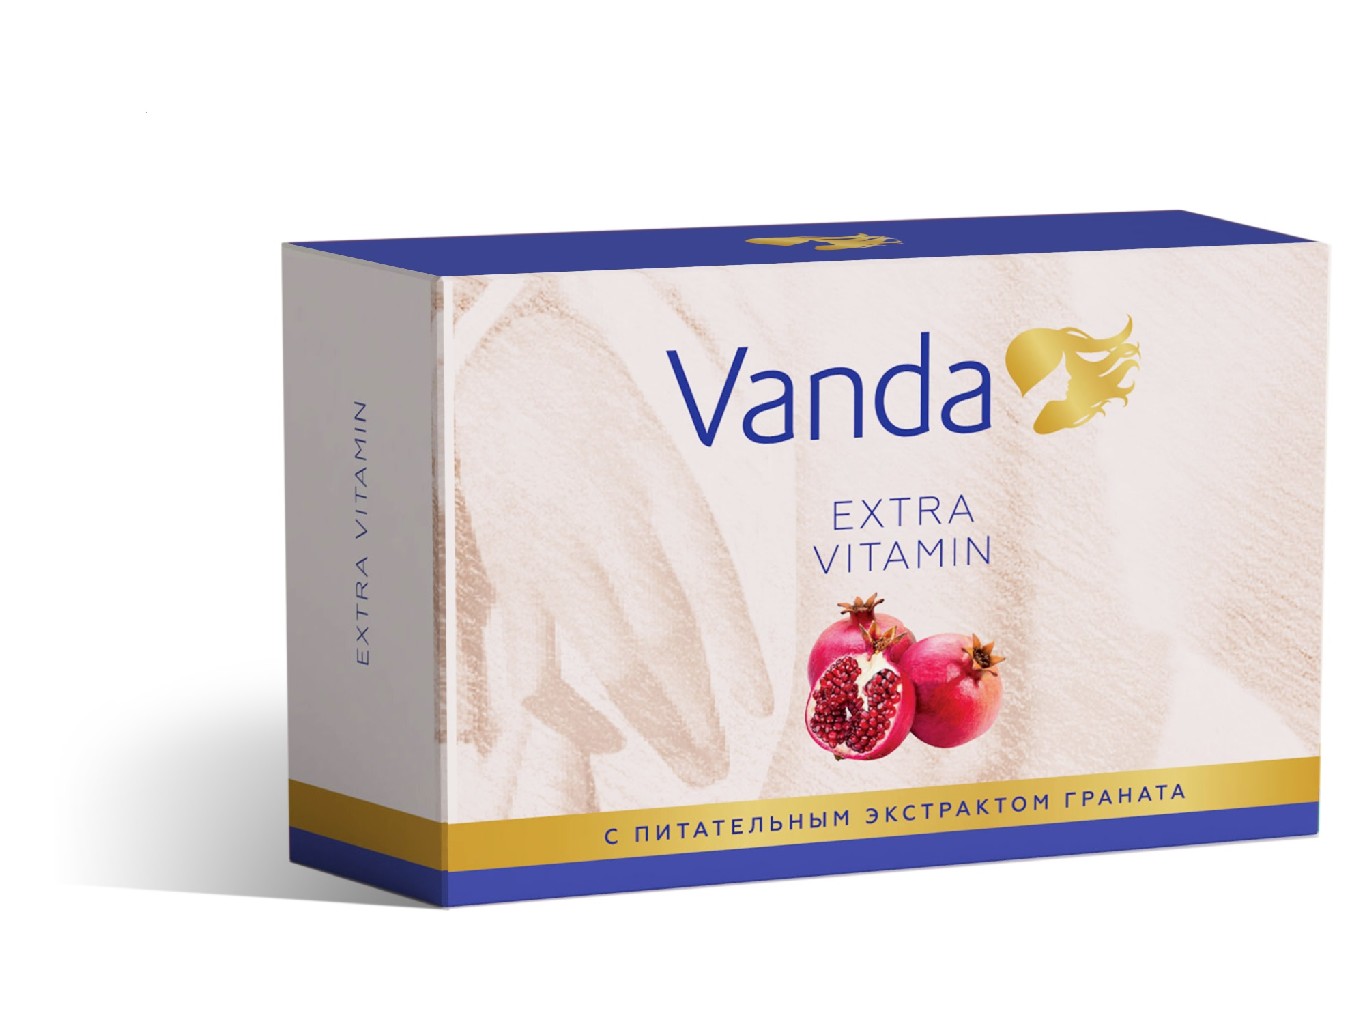 Vitamin extra. Мыло туалетное "Vanda" 85 гр. Мыло Vanda Extra Moisturizer с увлажняющим. Мыло туалетное Экстра. Мыло кусковое гранат.